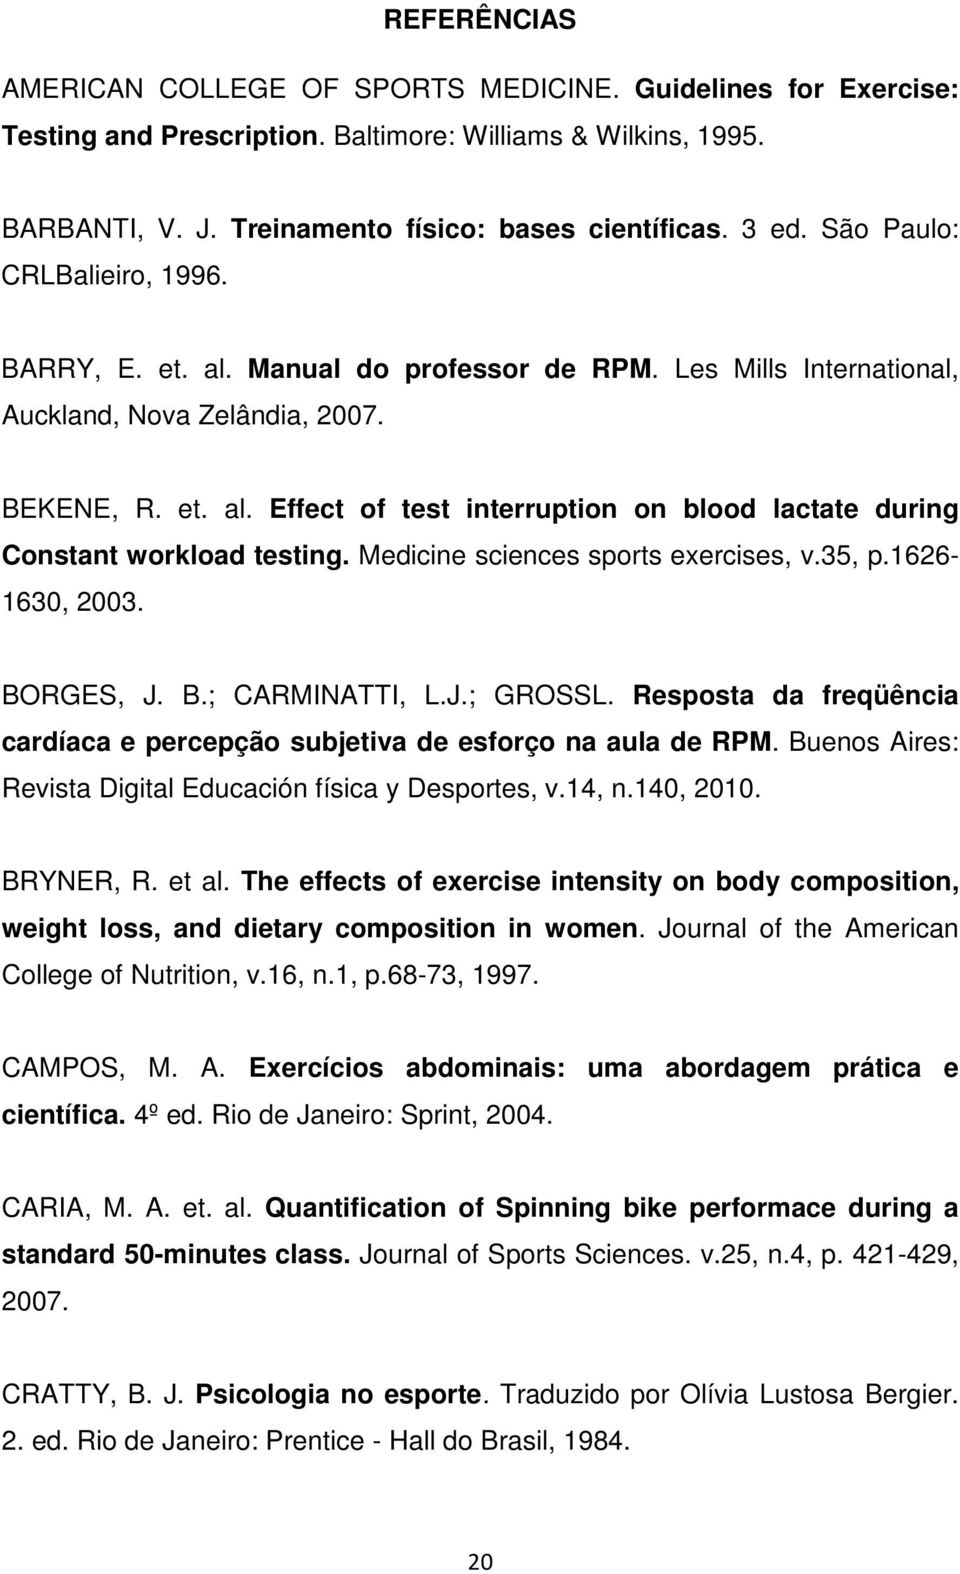 Medicine sciences sports exercises, v.35, p.1626-1630, 2003. BORGES, J. B.; CARMINATTI, L.J.; GROSSL. Resposta da freqüência cardíaca e percepção subjetiva de esforço na aula de RPM.